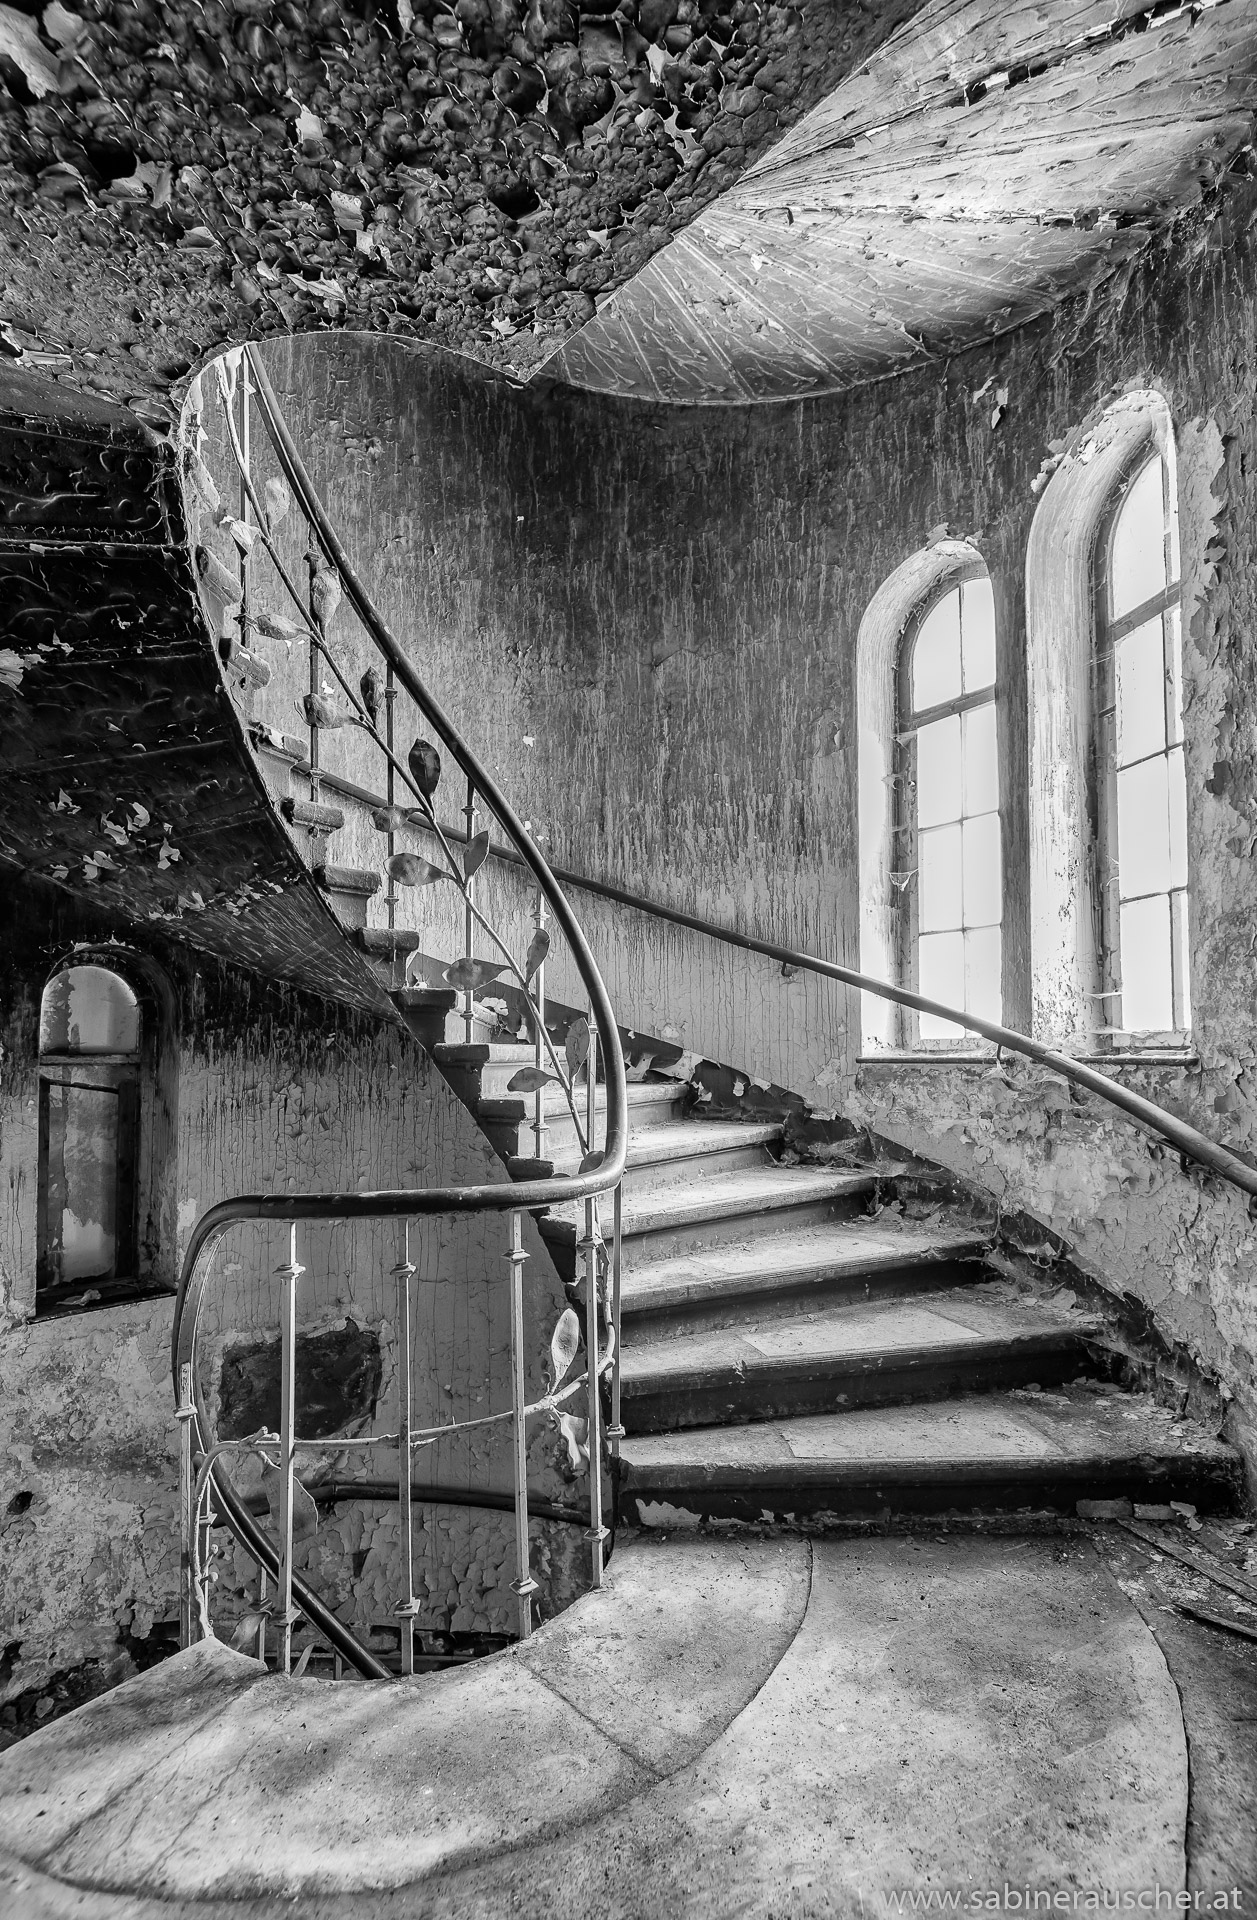 Stairwell at a lost place - Hotel Fürstenhof in Eisenach, Germany | Kurthotel Fürstenhof in Eisenach ist ein fotografischer Lost Place